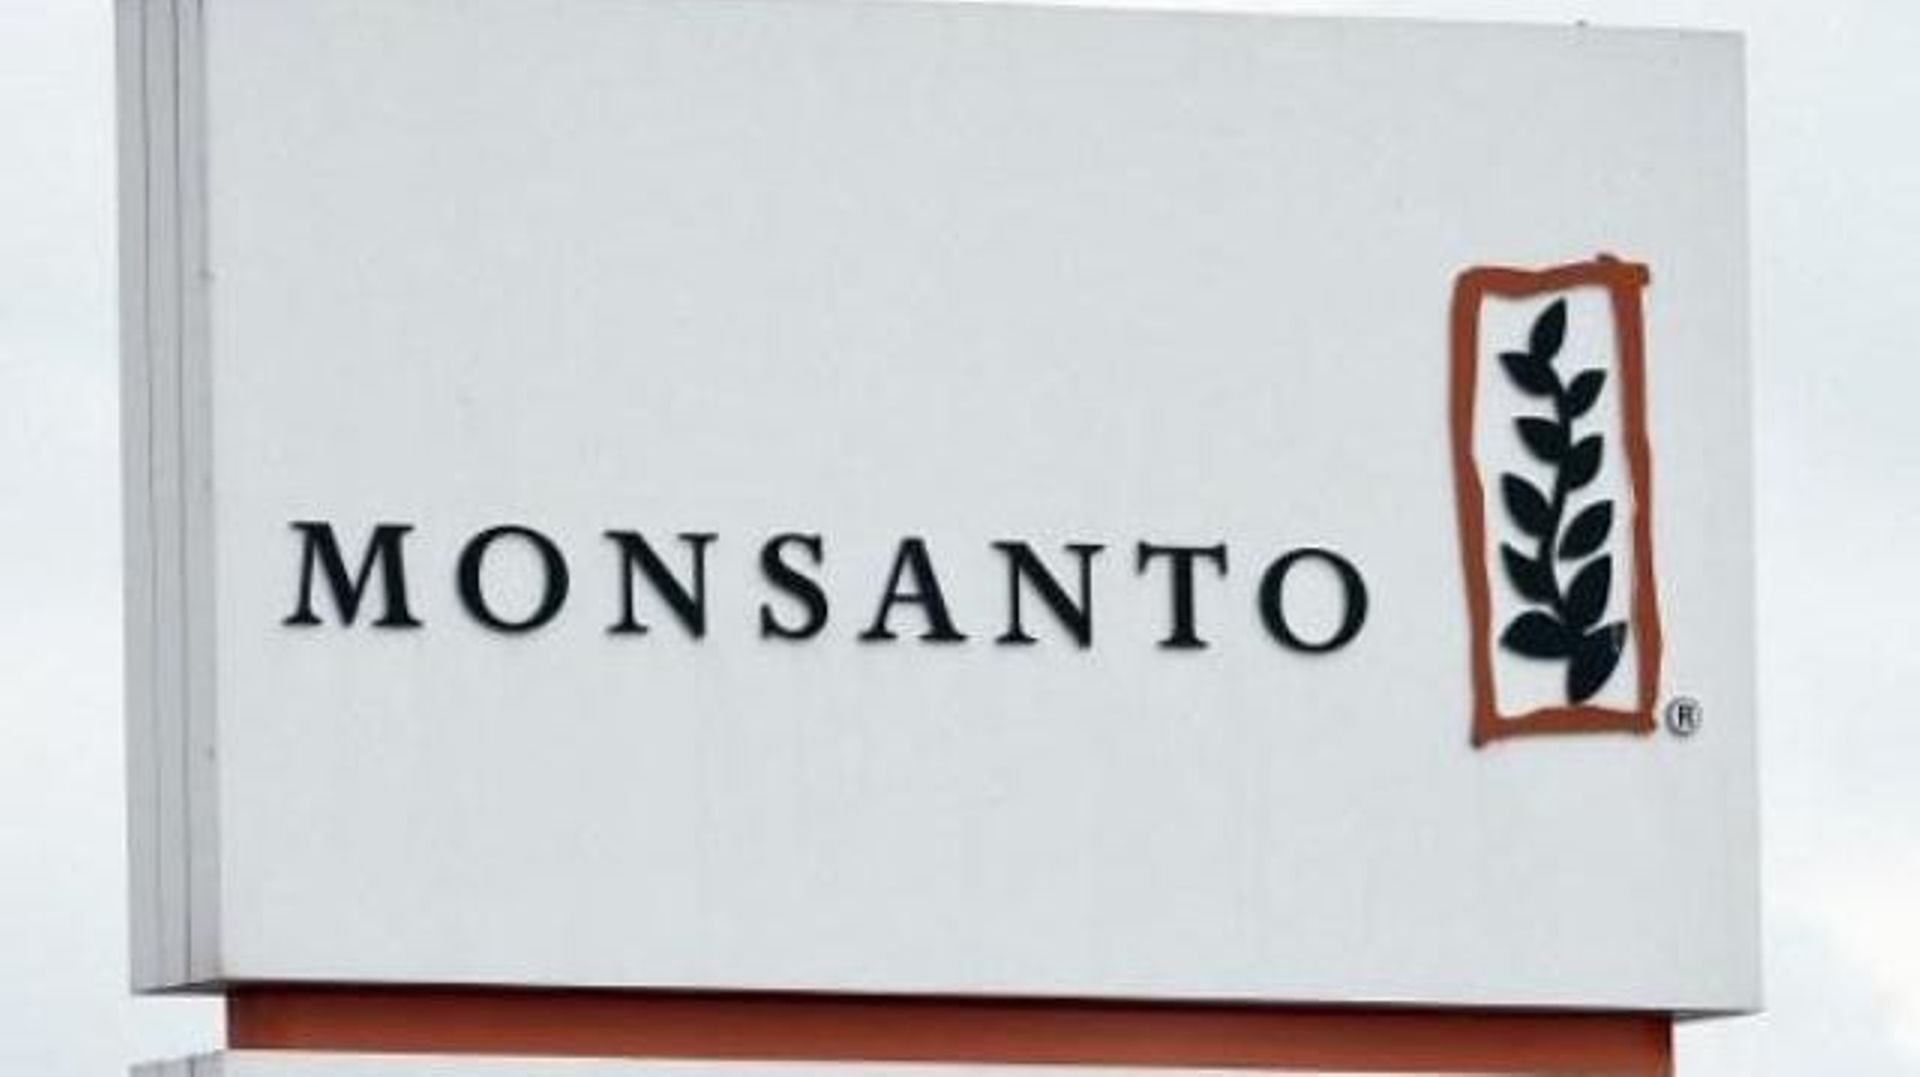 Récompense de 20 millions d'euros pour avoir alerté de fraude chez Monsanto